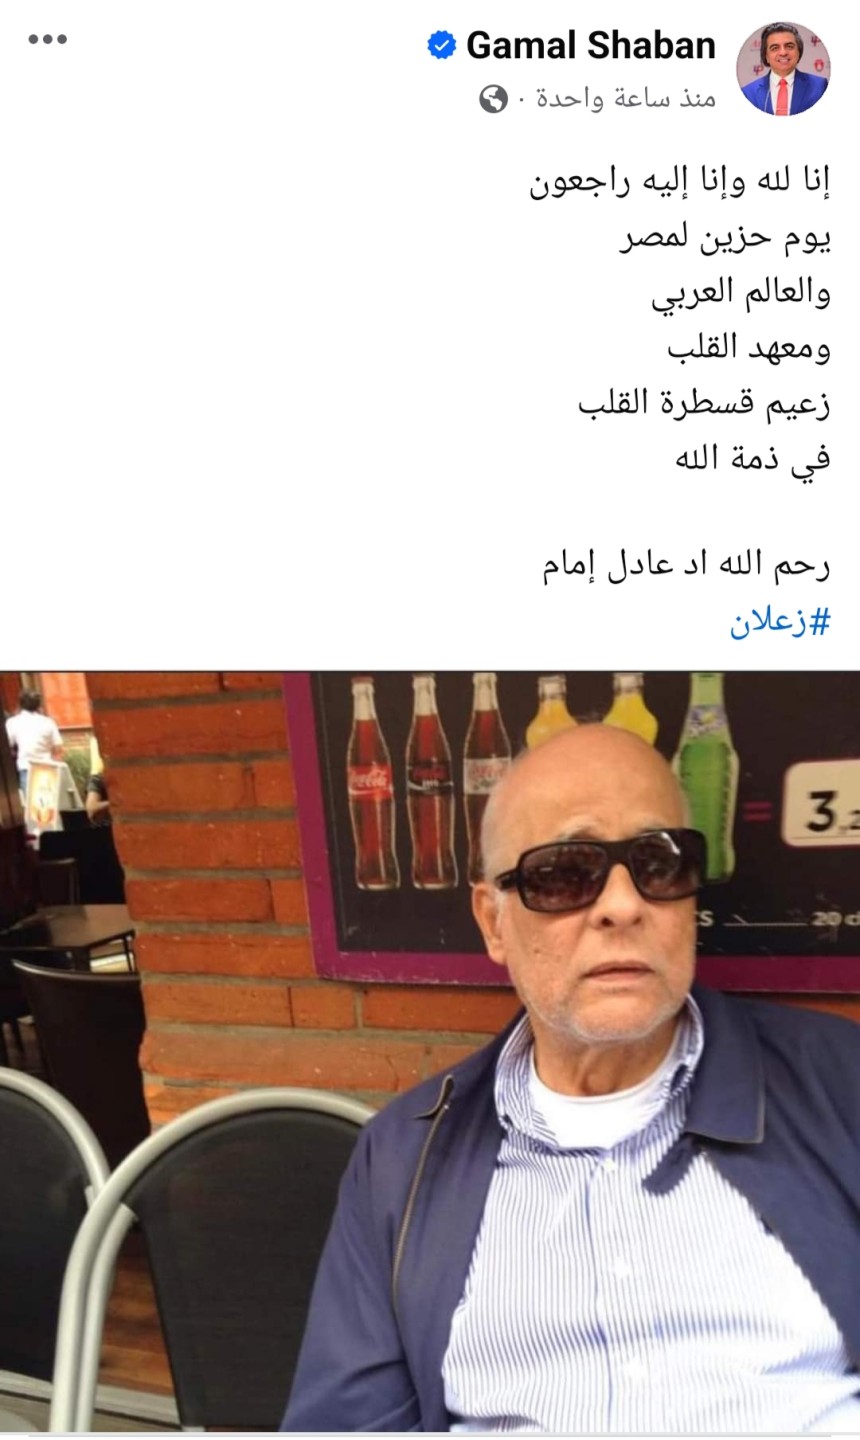 عاجل| جمال شعبان يعلن وفاة أستاذ أمراض القلب الدكتور عادل إمام